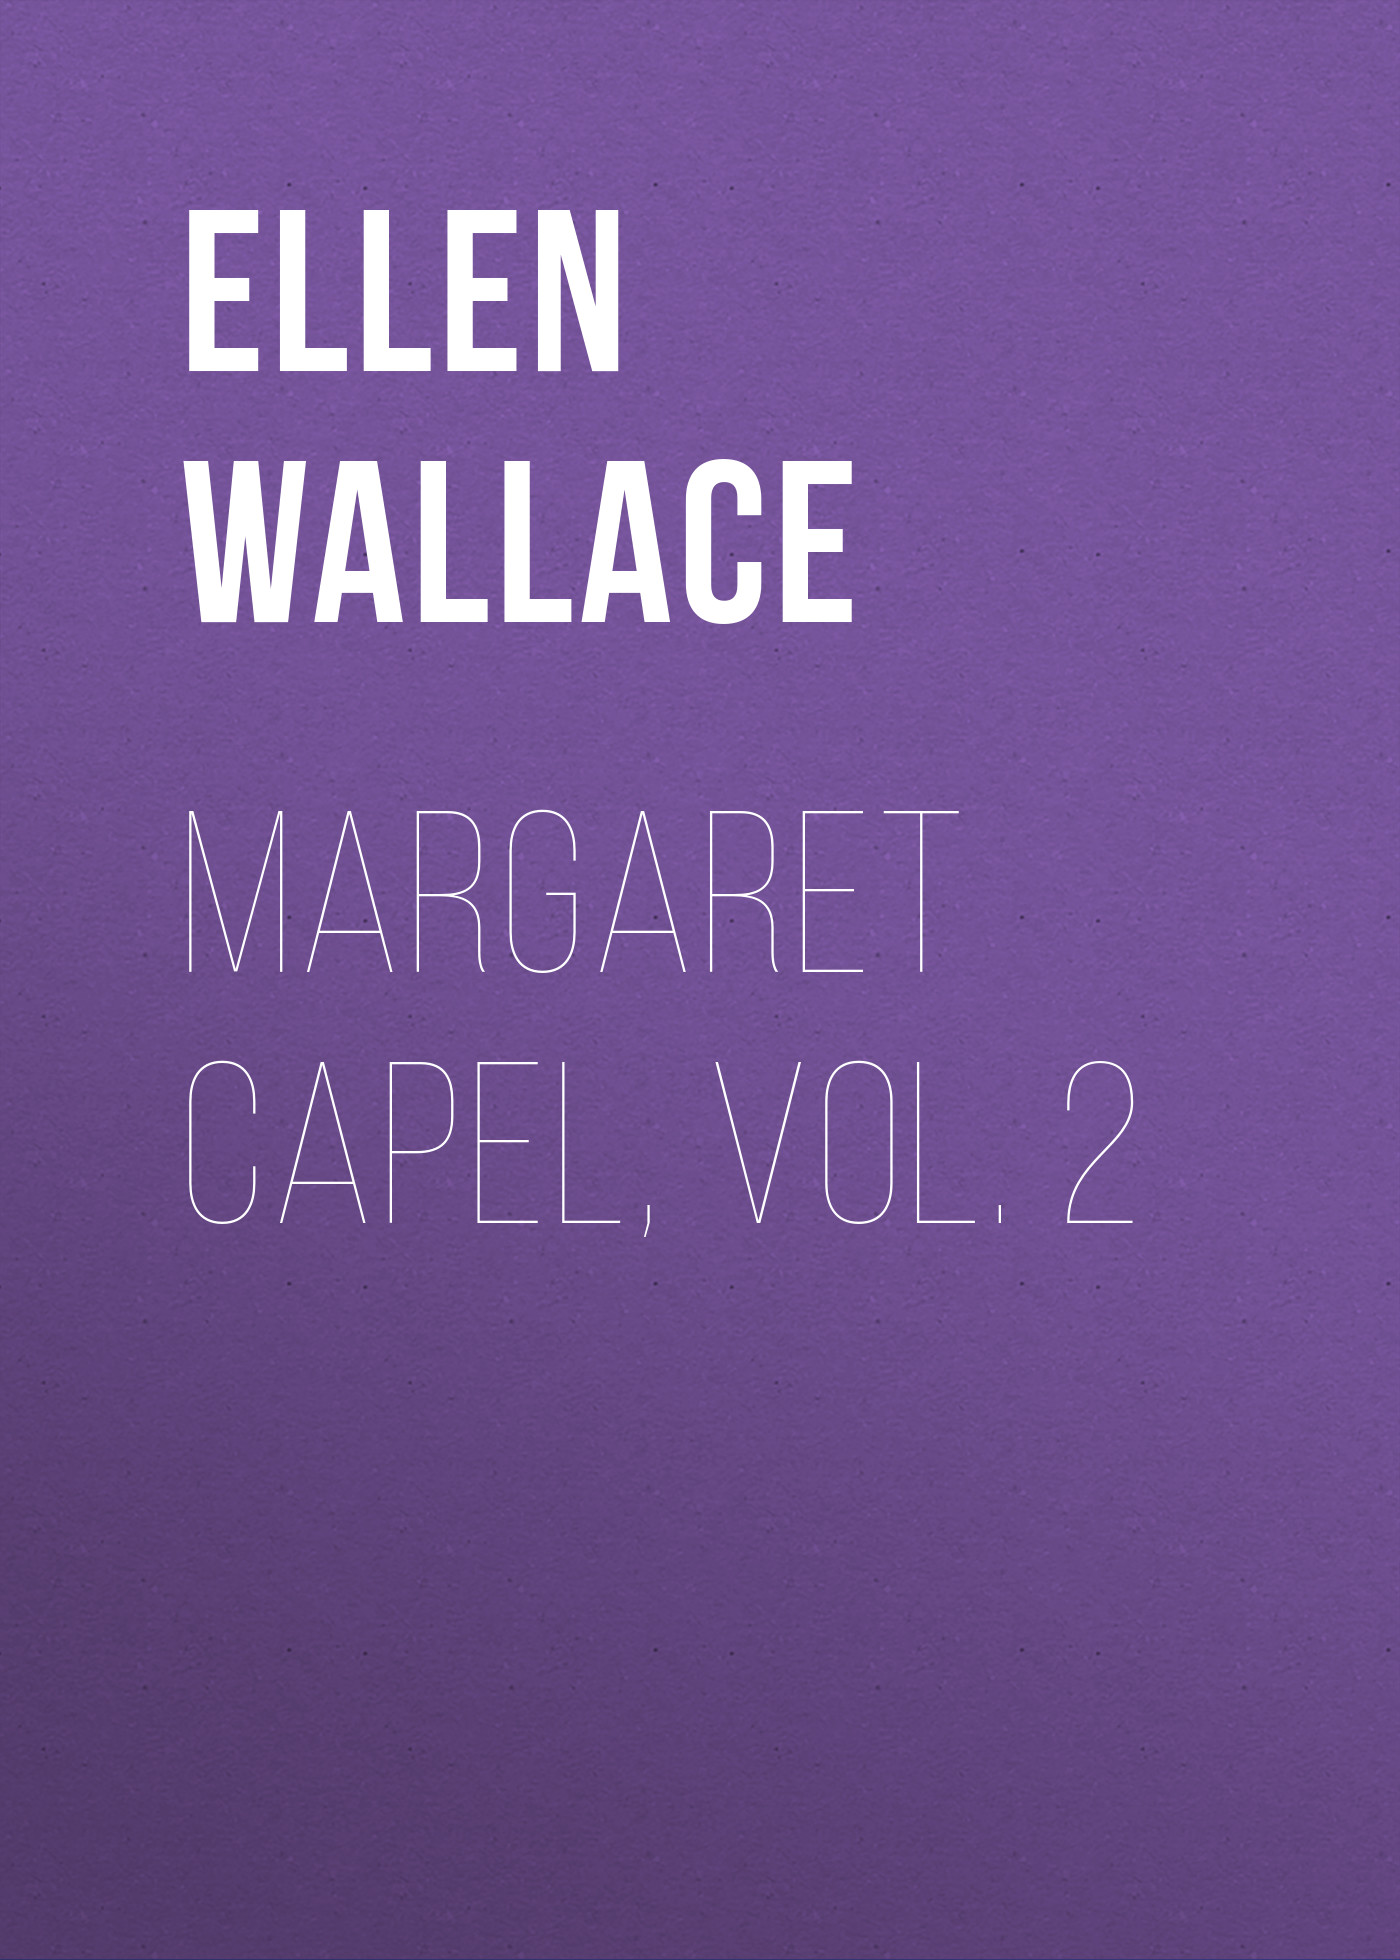 Книга Margaret Capel, vol. 2 из серии , созданная Ellen Wallace, может относится к жанру Зарубежная классика, Литература 19 века, Зарубежная старинная литература. Стоимость электронной книги Margaret Capel, vol. 2 с идентификатором 34282592 составляет 0 руб.